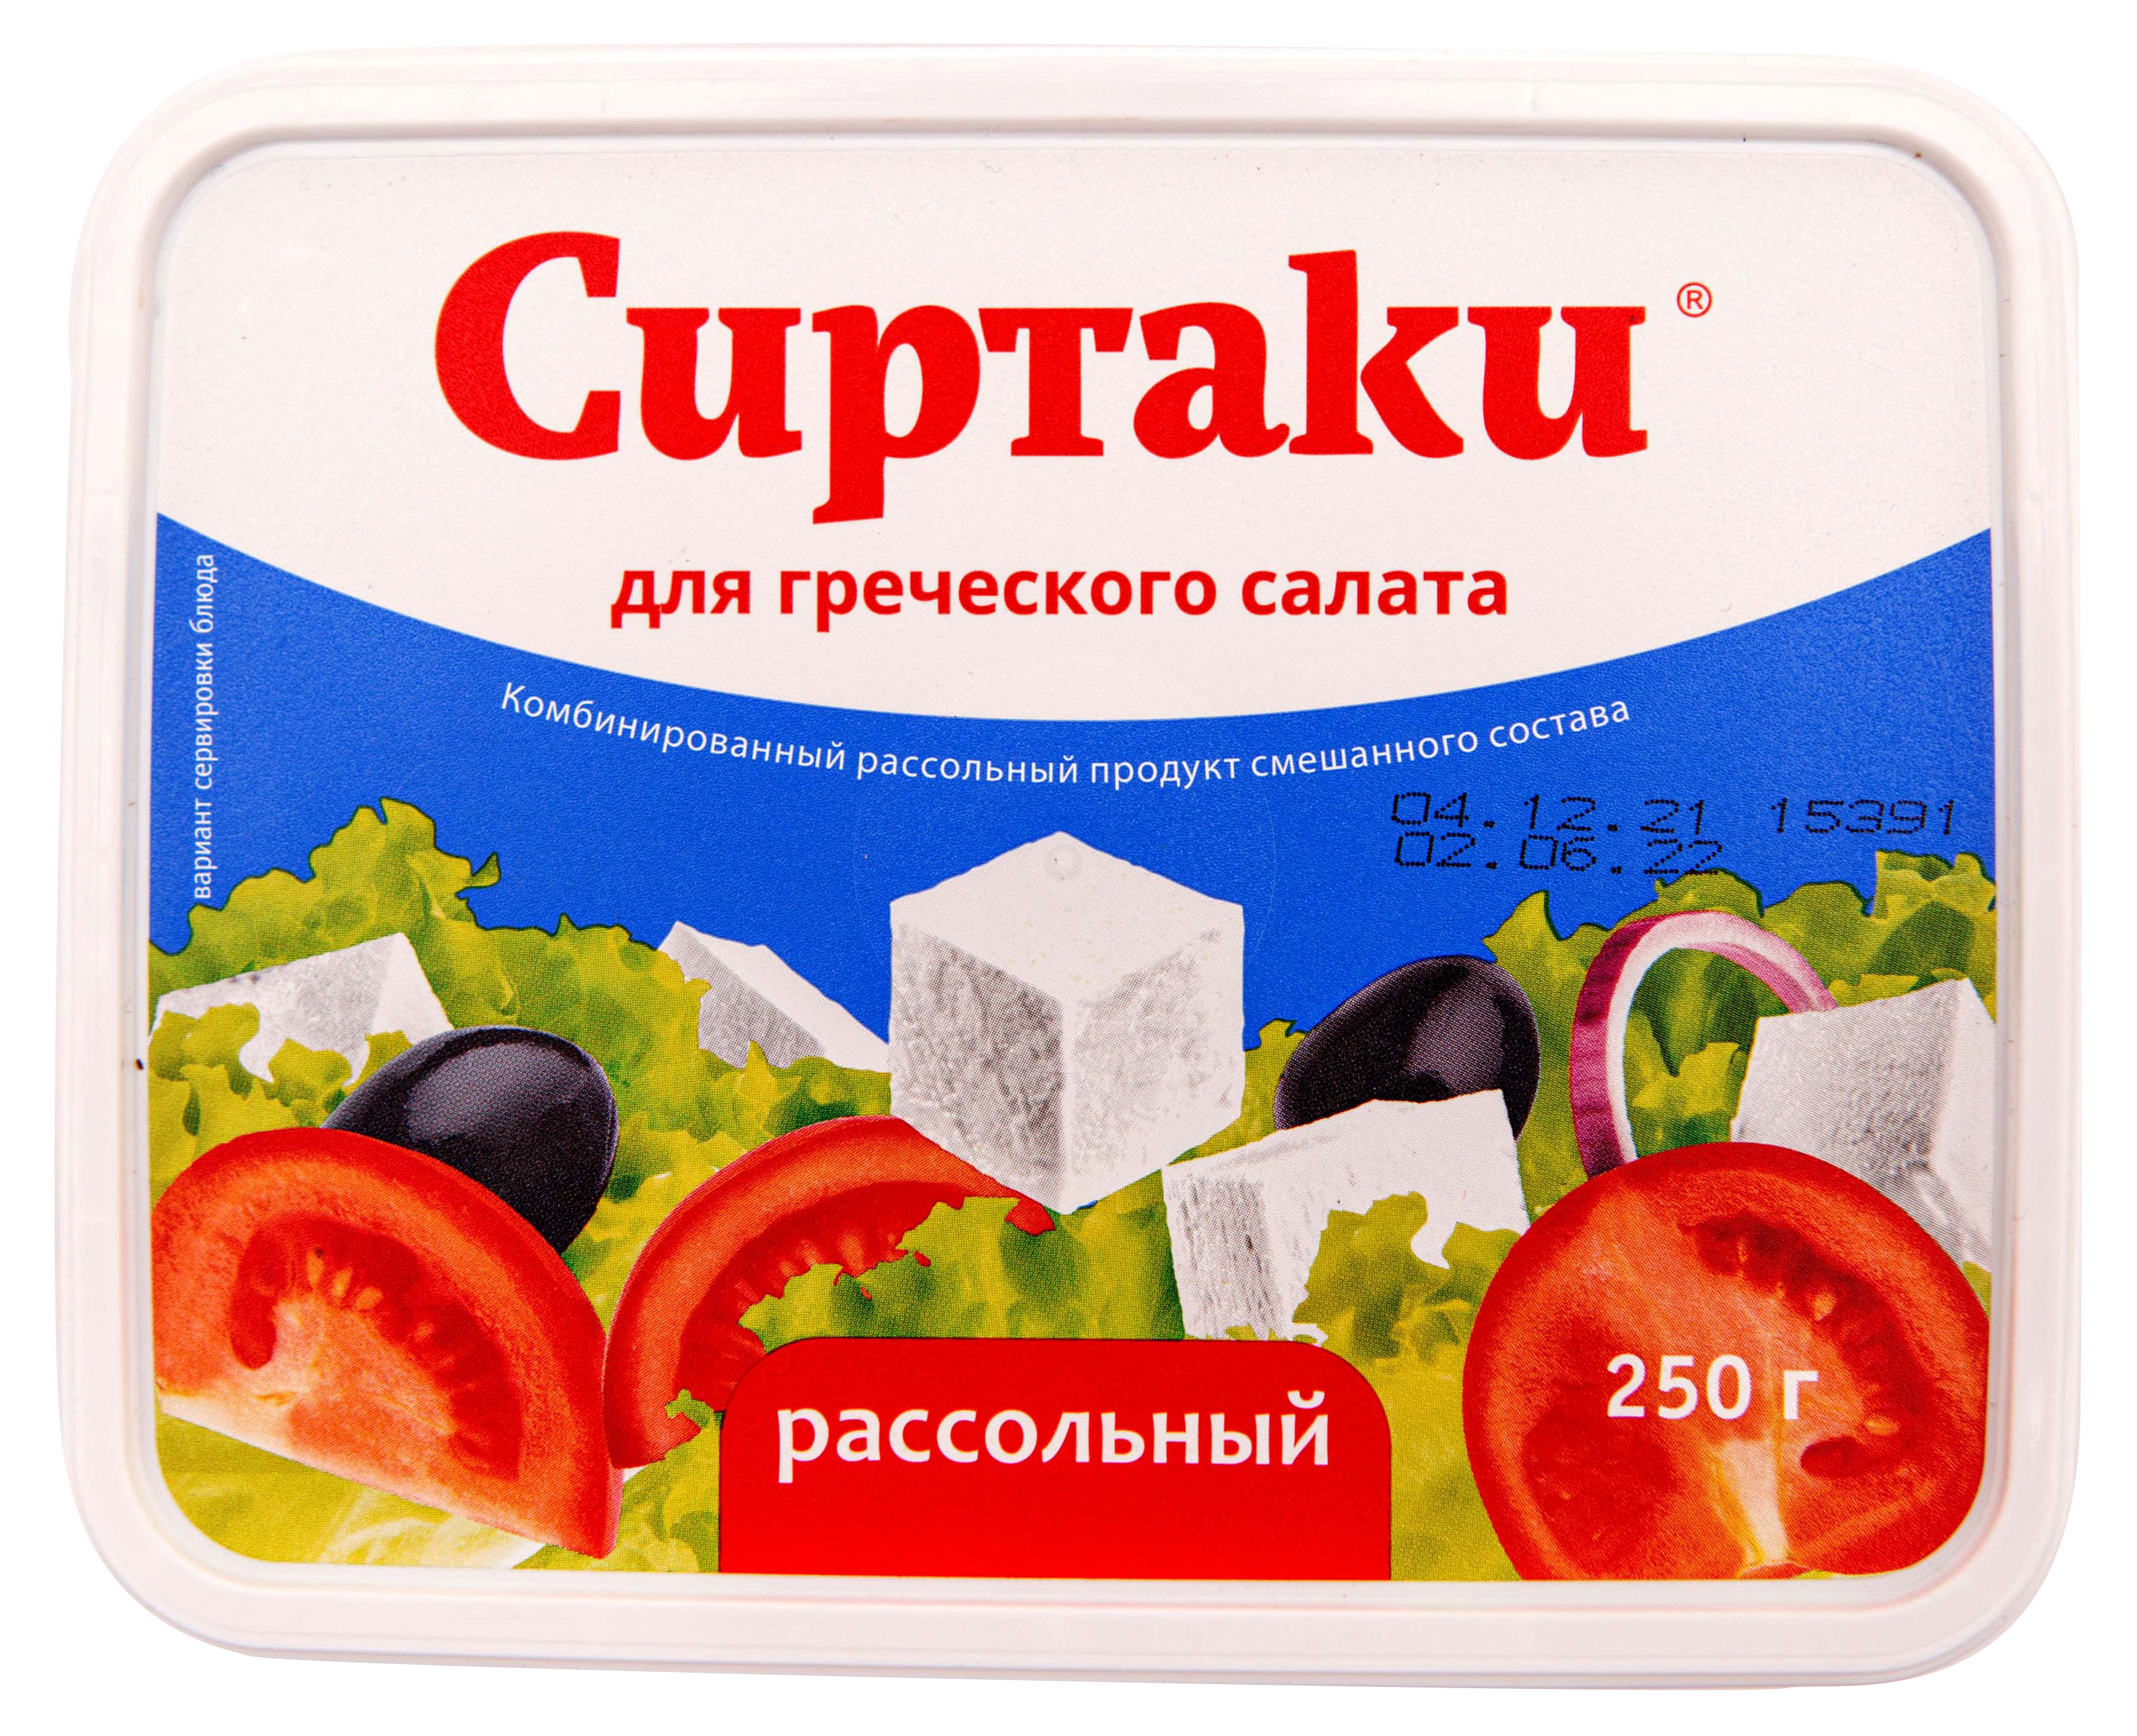 Сырный продукт рассольный «Сиртаки» Original для греческого салата 55% ЗМЖ, 250 г